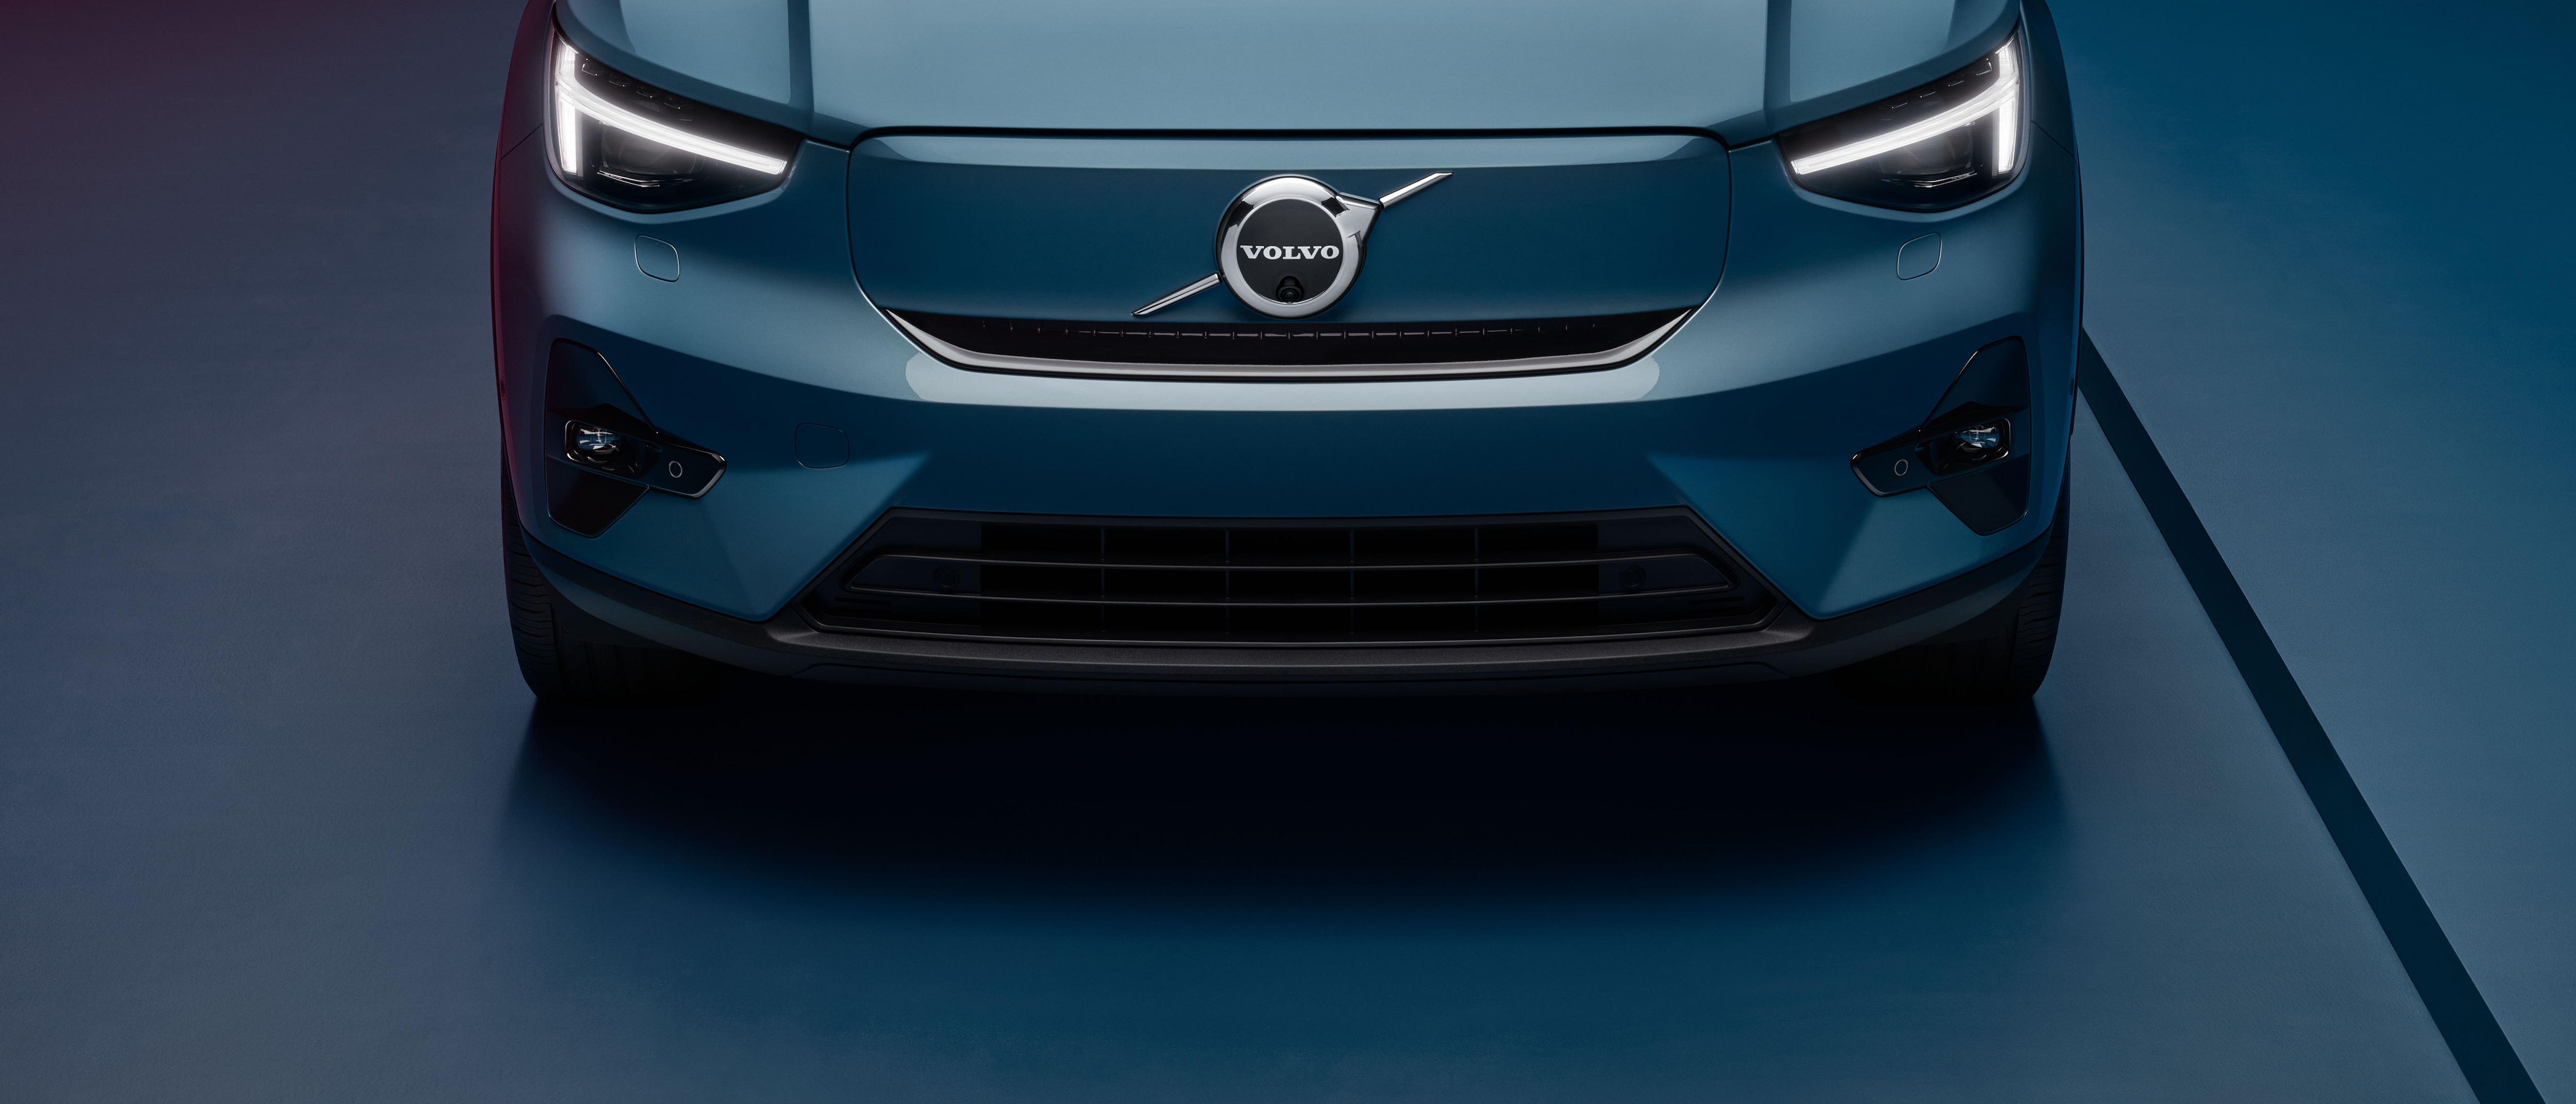 De neus van een blauwe Volvo C40